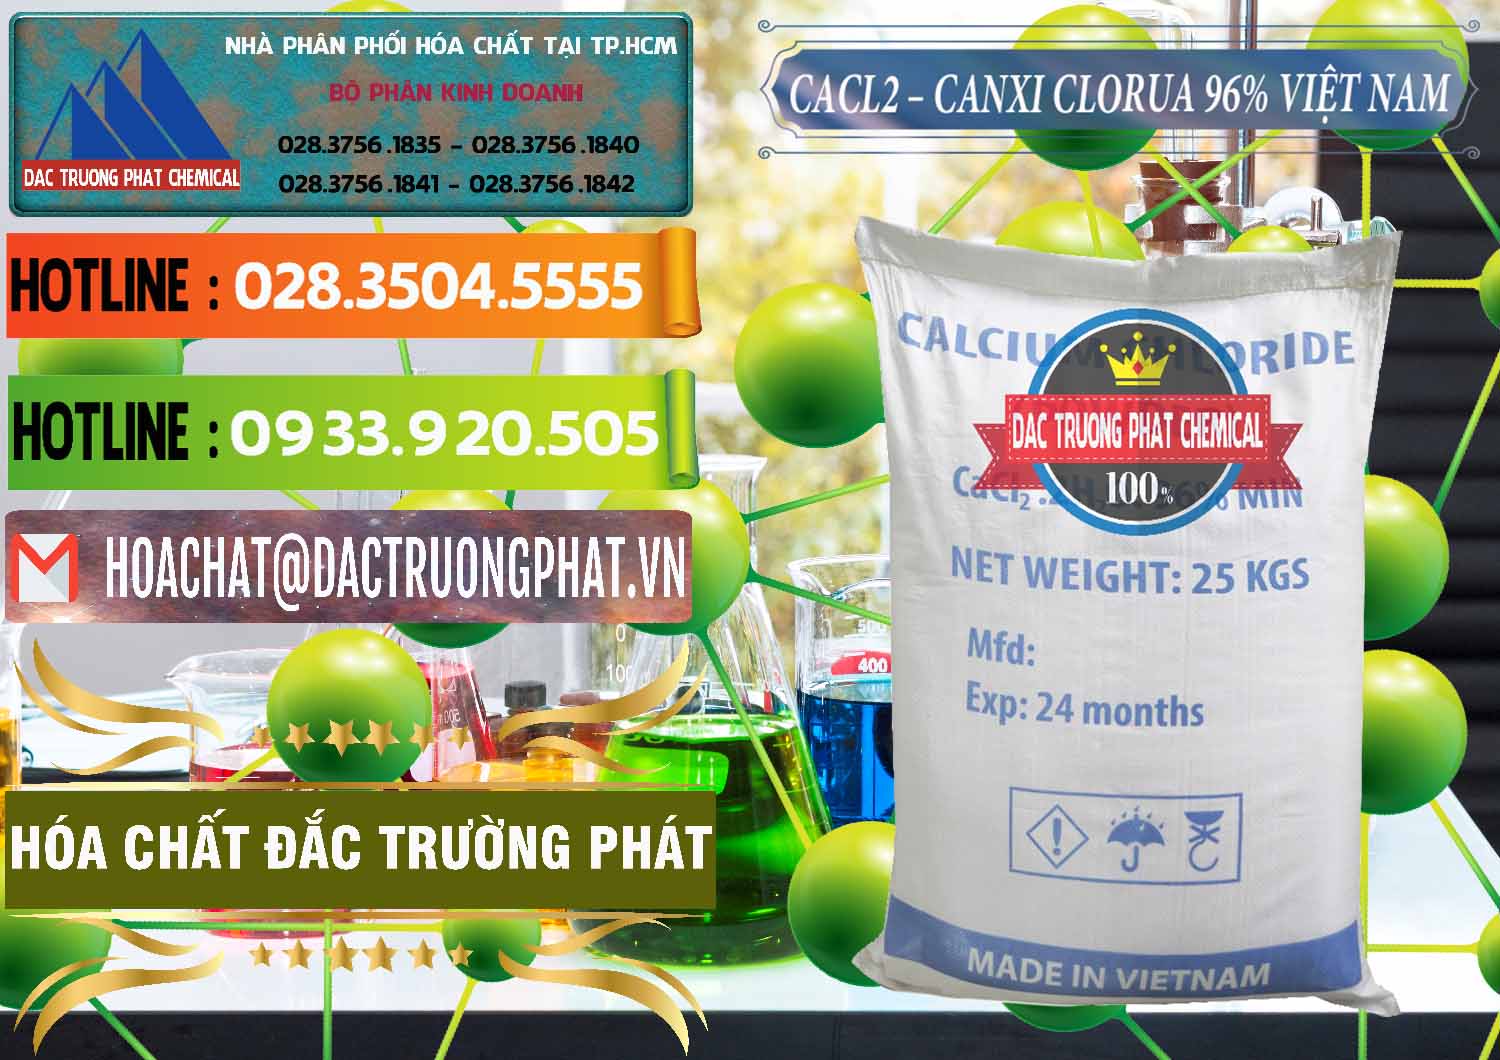 Đơn vị chuyên bán - cung cấp CaCl2 – Canxi Clorua 96% Việt Nam - 0236 - Chuyên kinh doanh _ cung cấp hóa chất tại TP.HCM - cungcaphoachat.com.vn